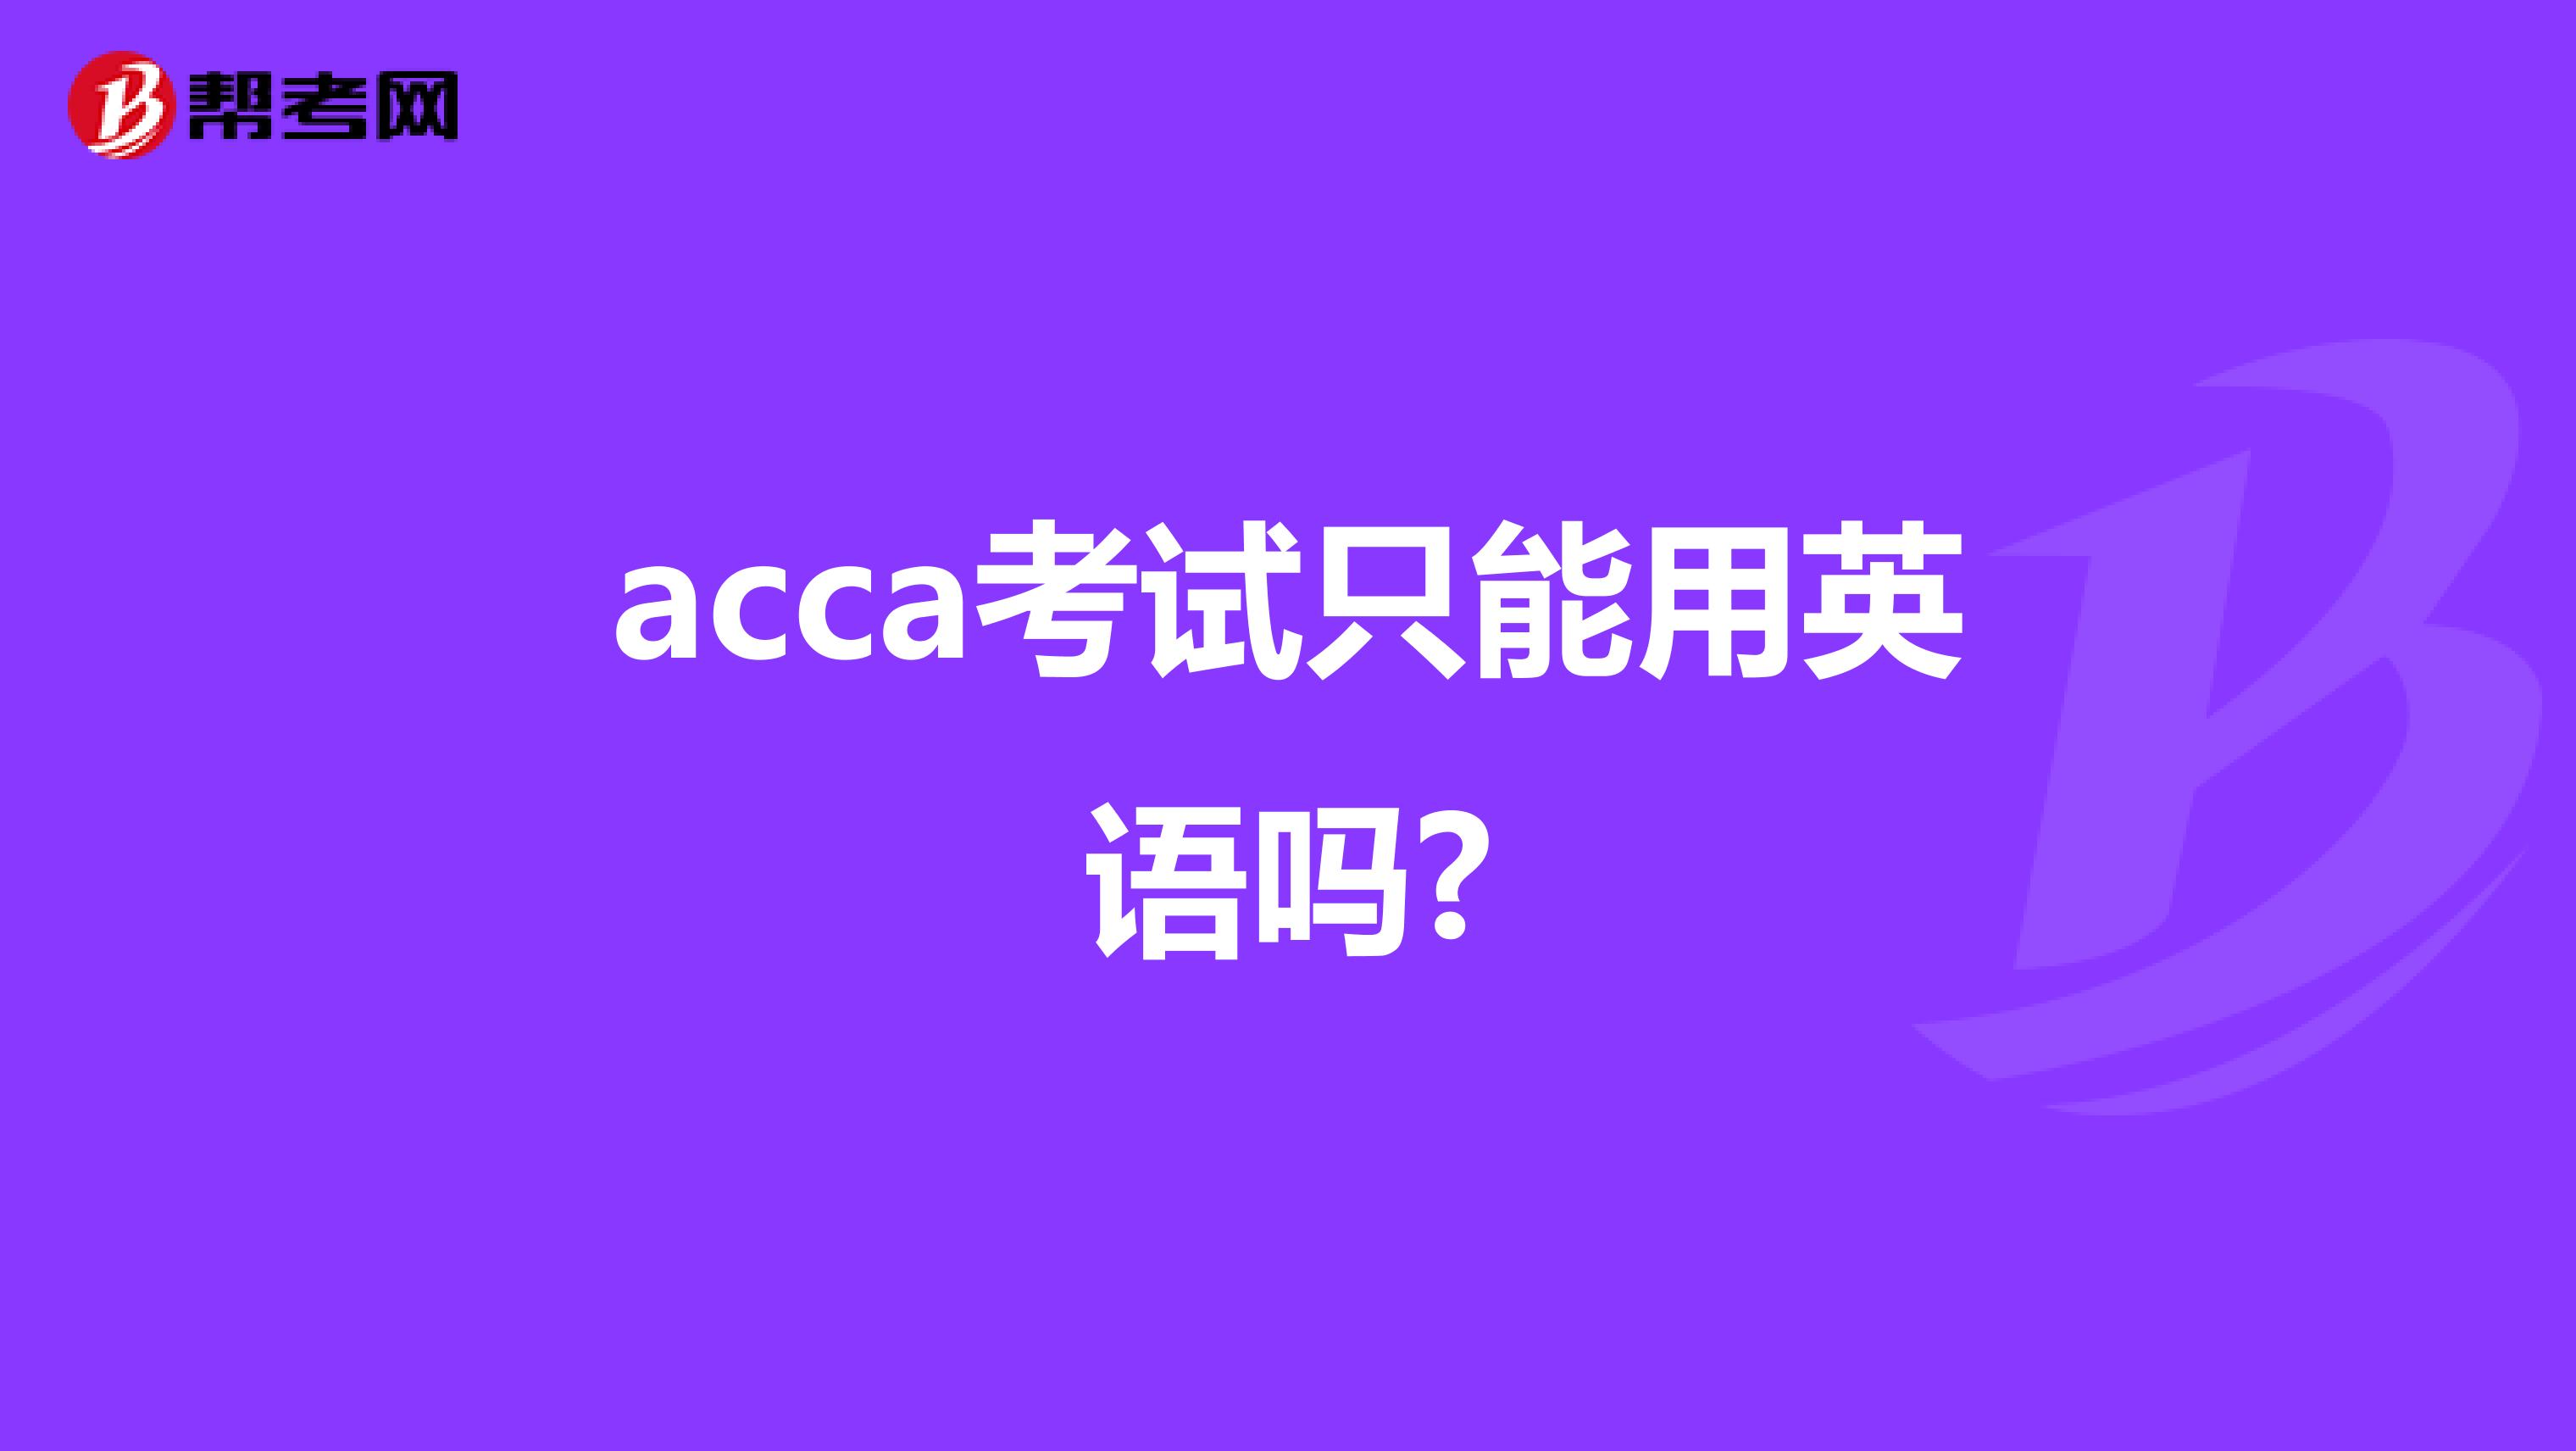 acca考试只能用英语吗?